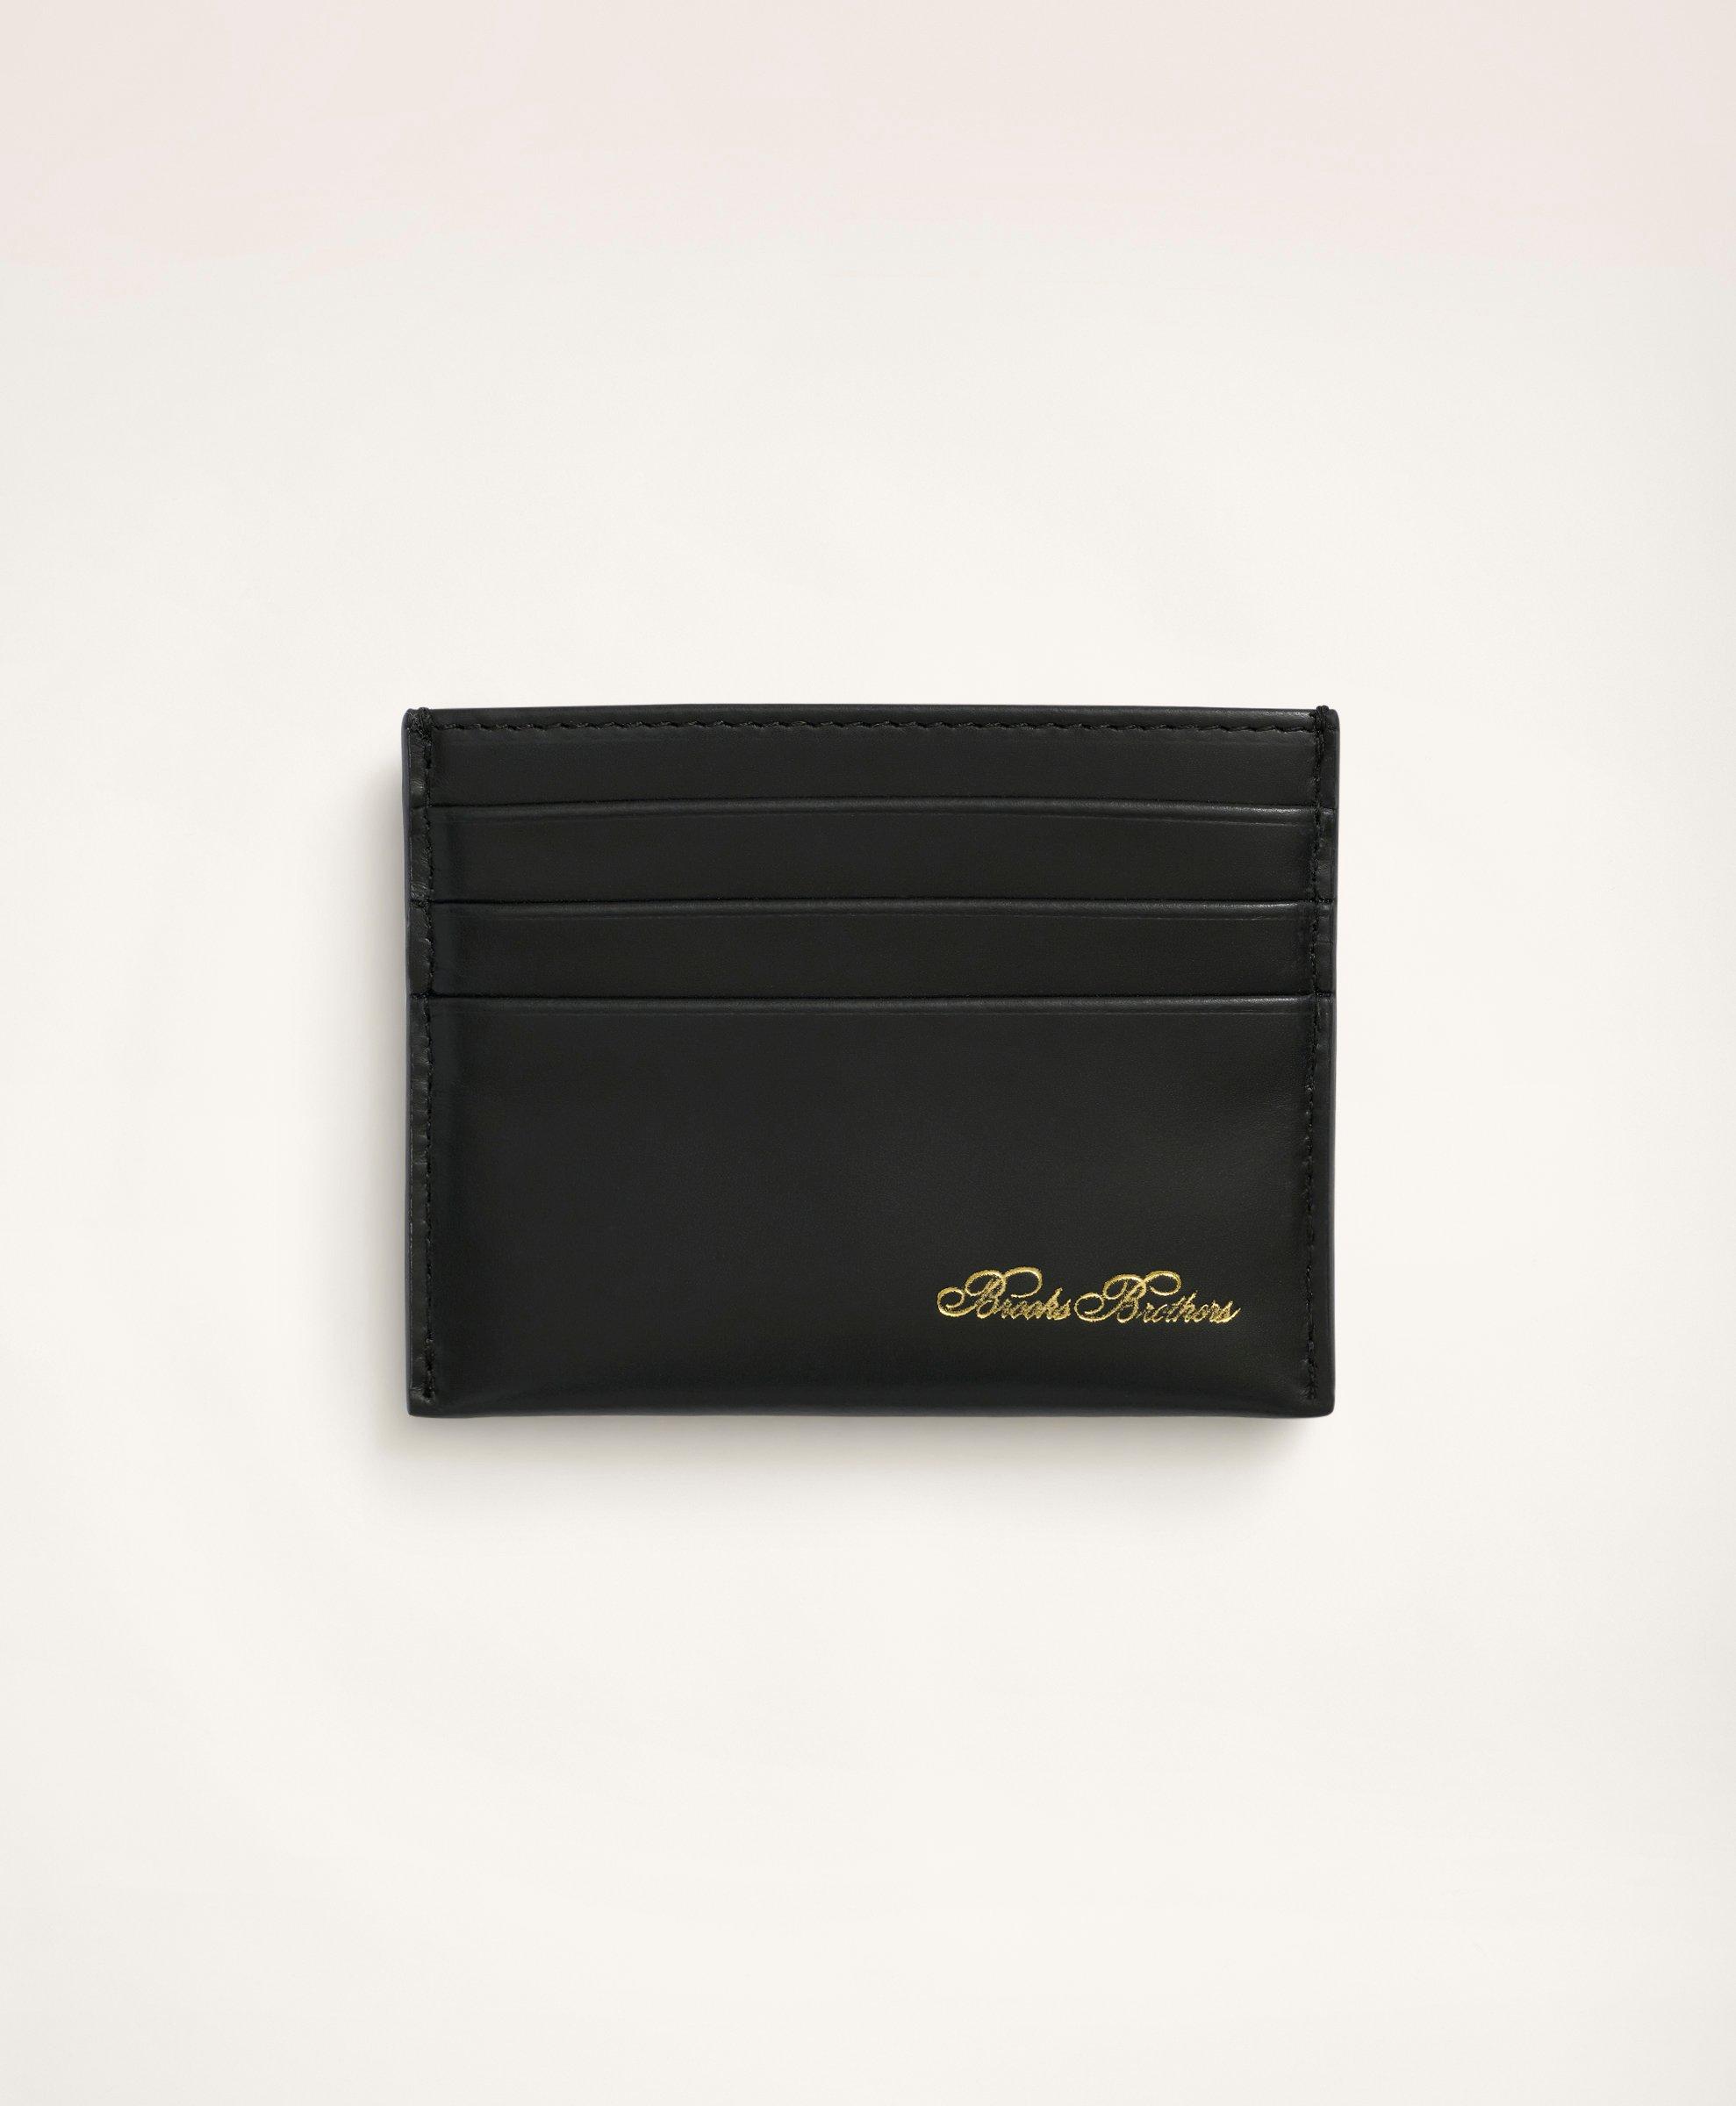 Prada Chain Card Case long wallet